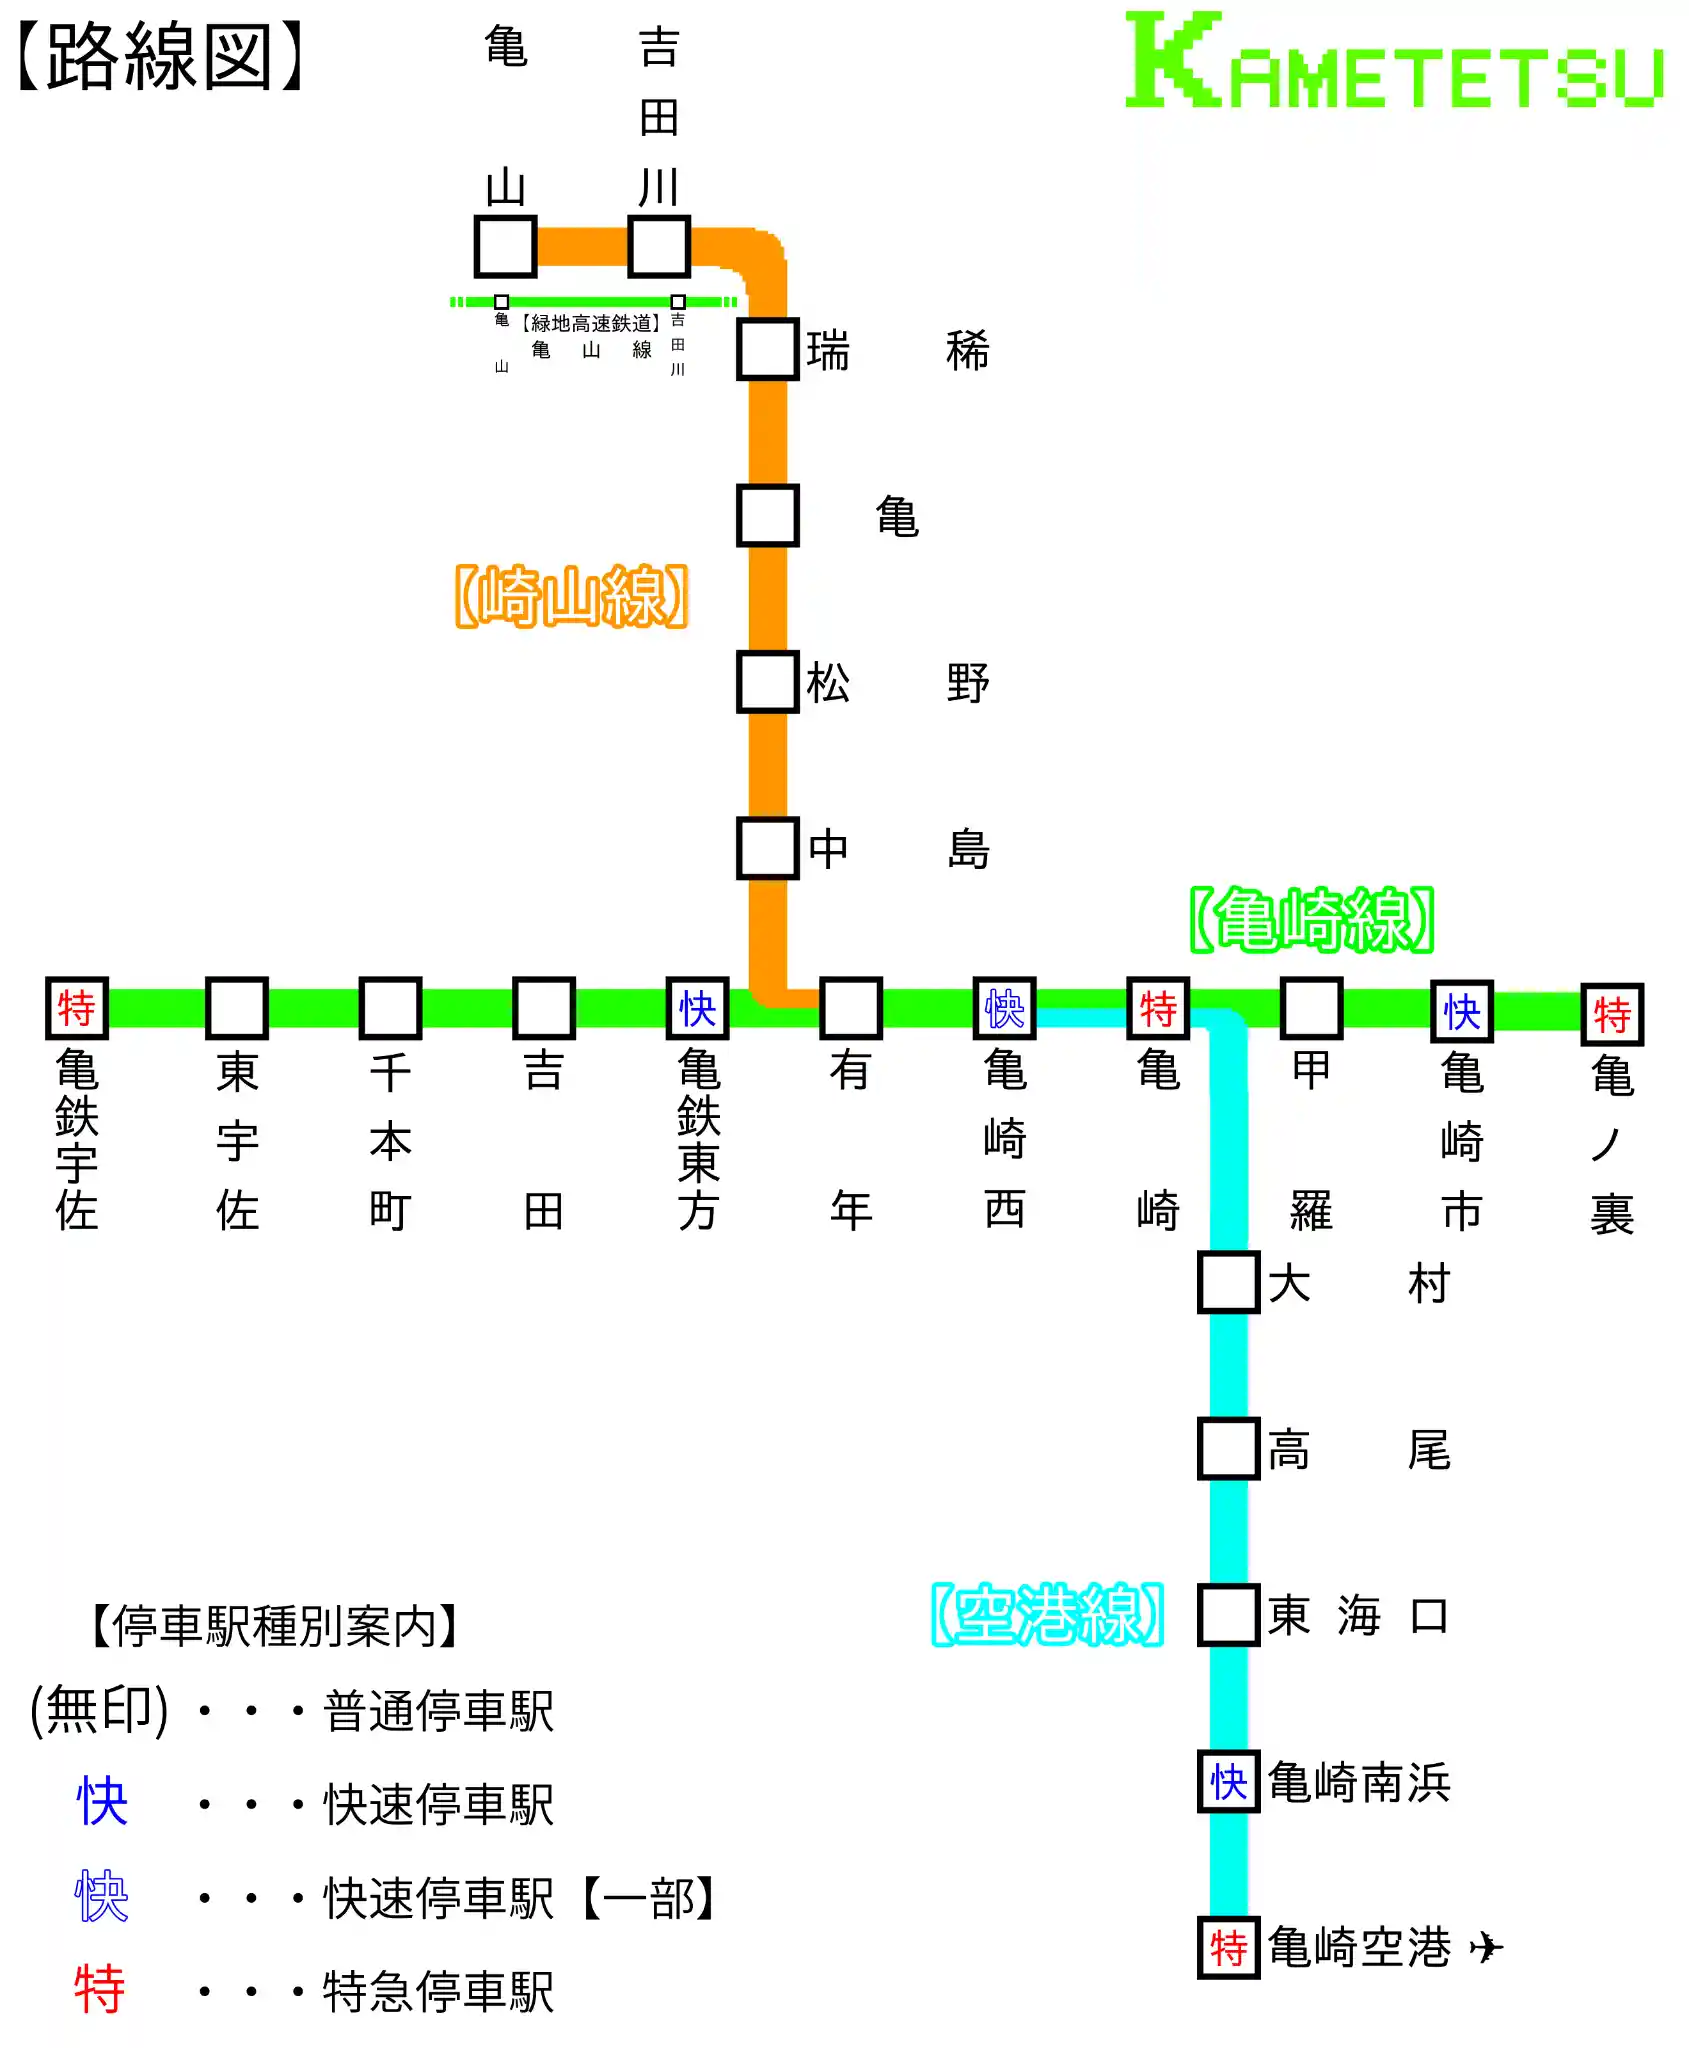 kamezaki railway rootmap.png